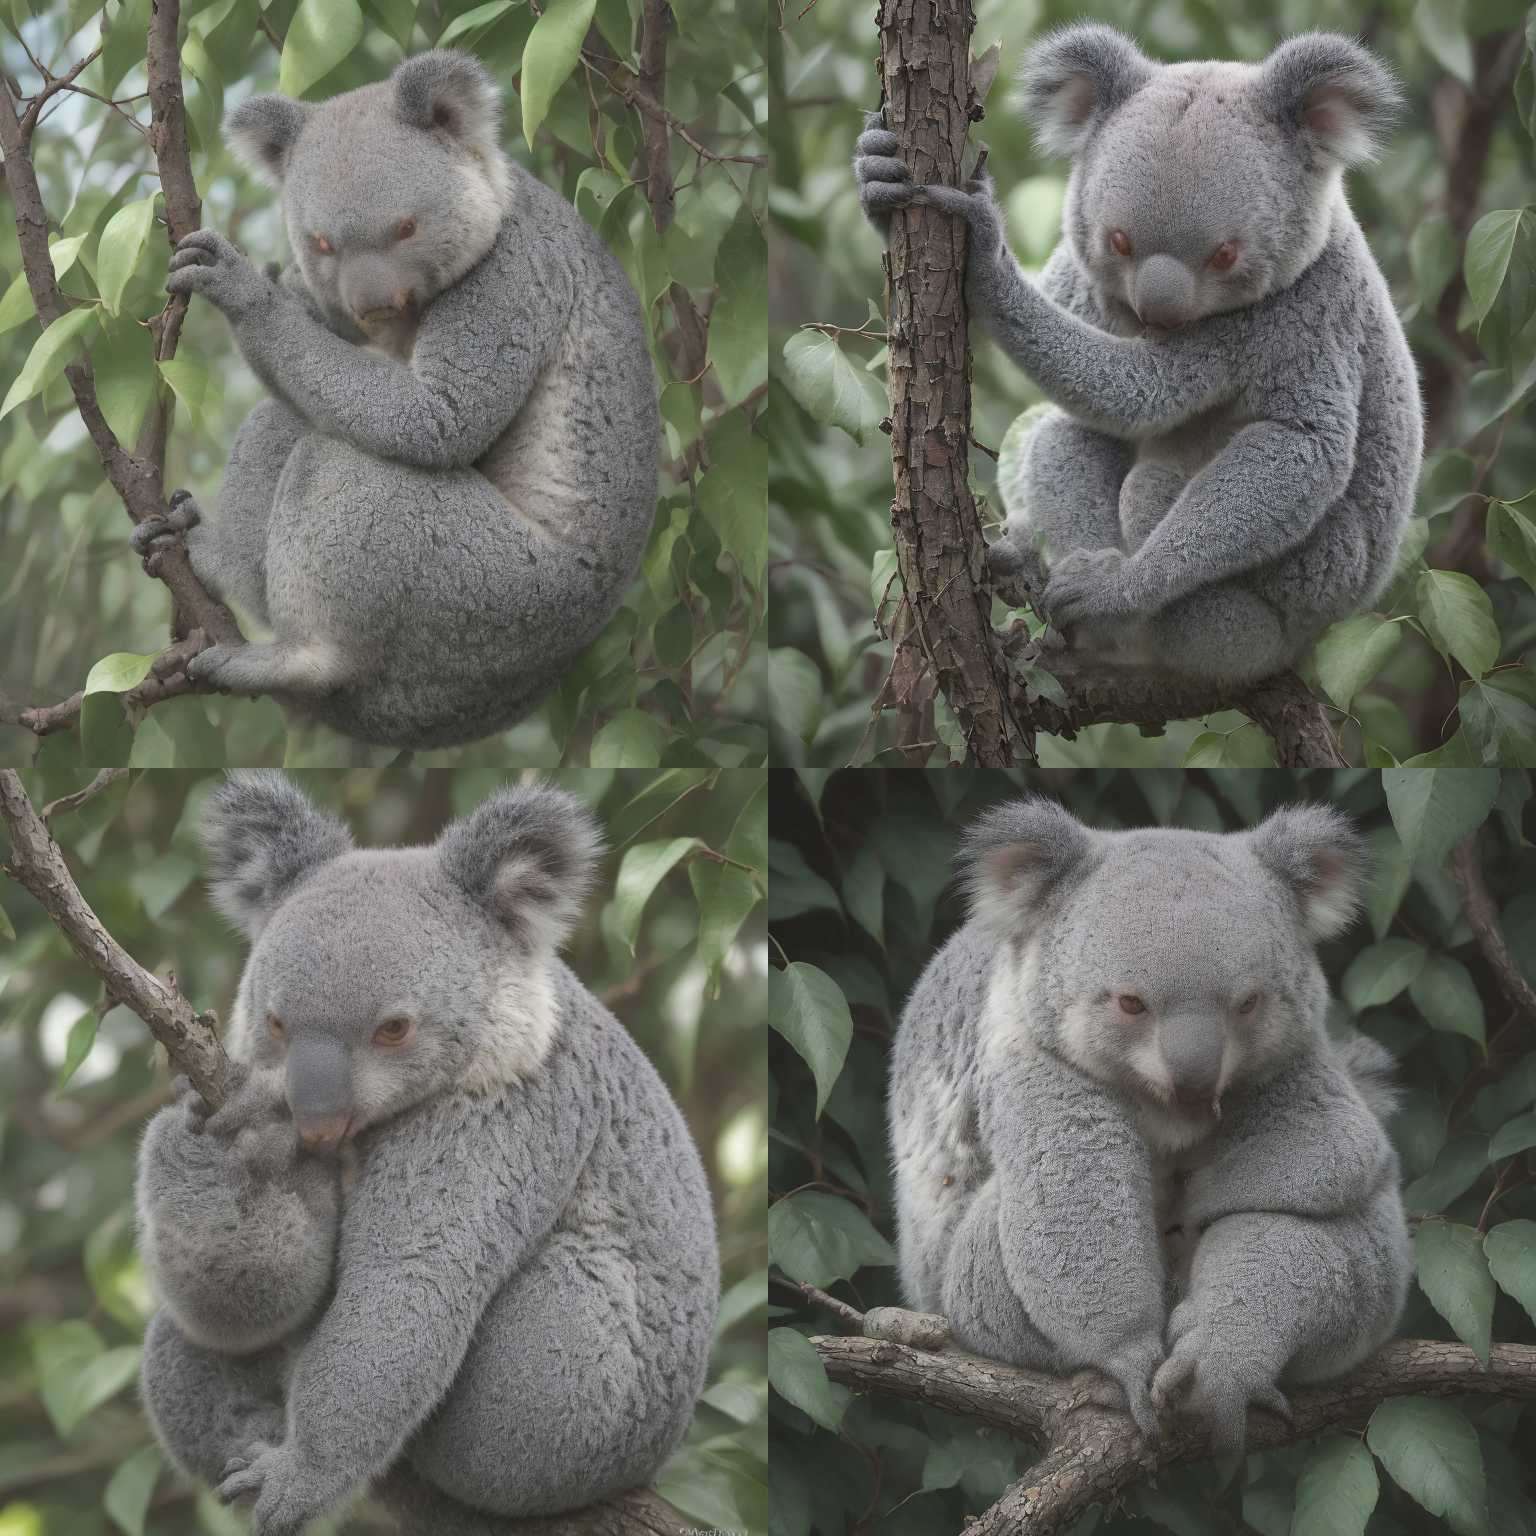 A koala eating